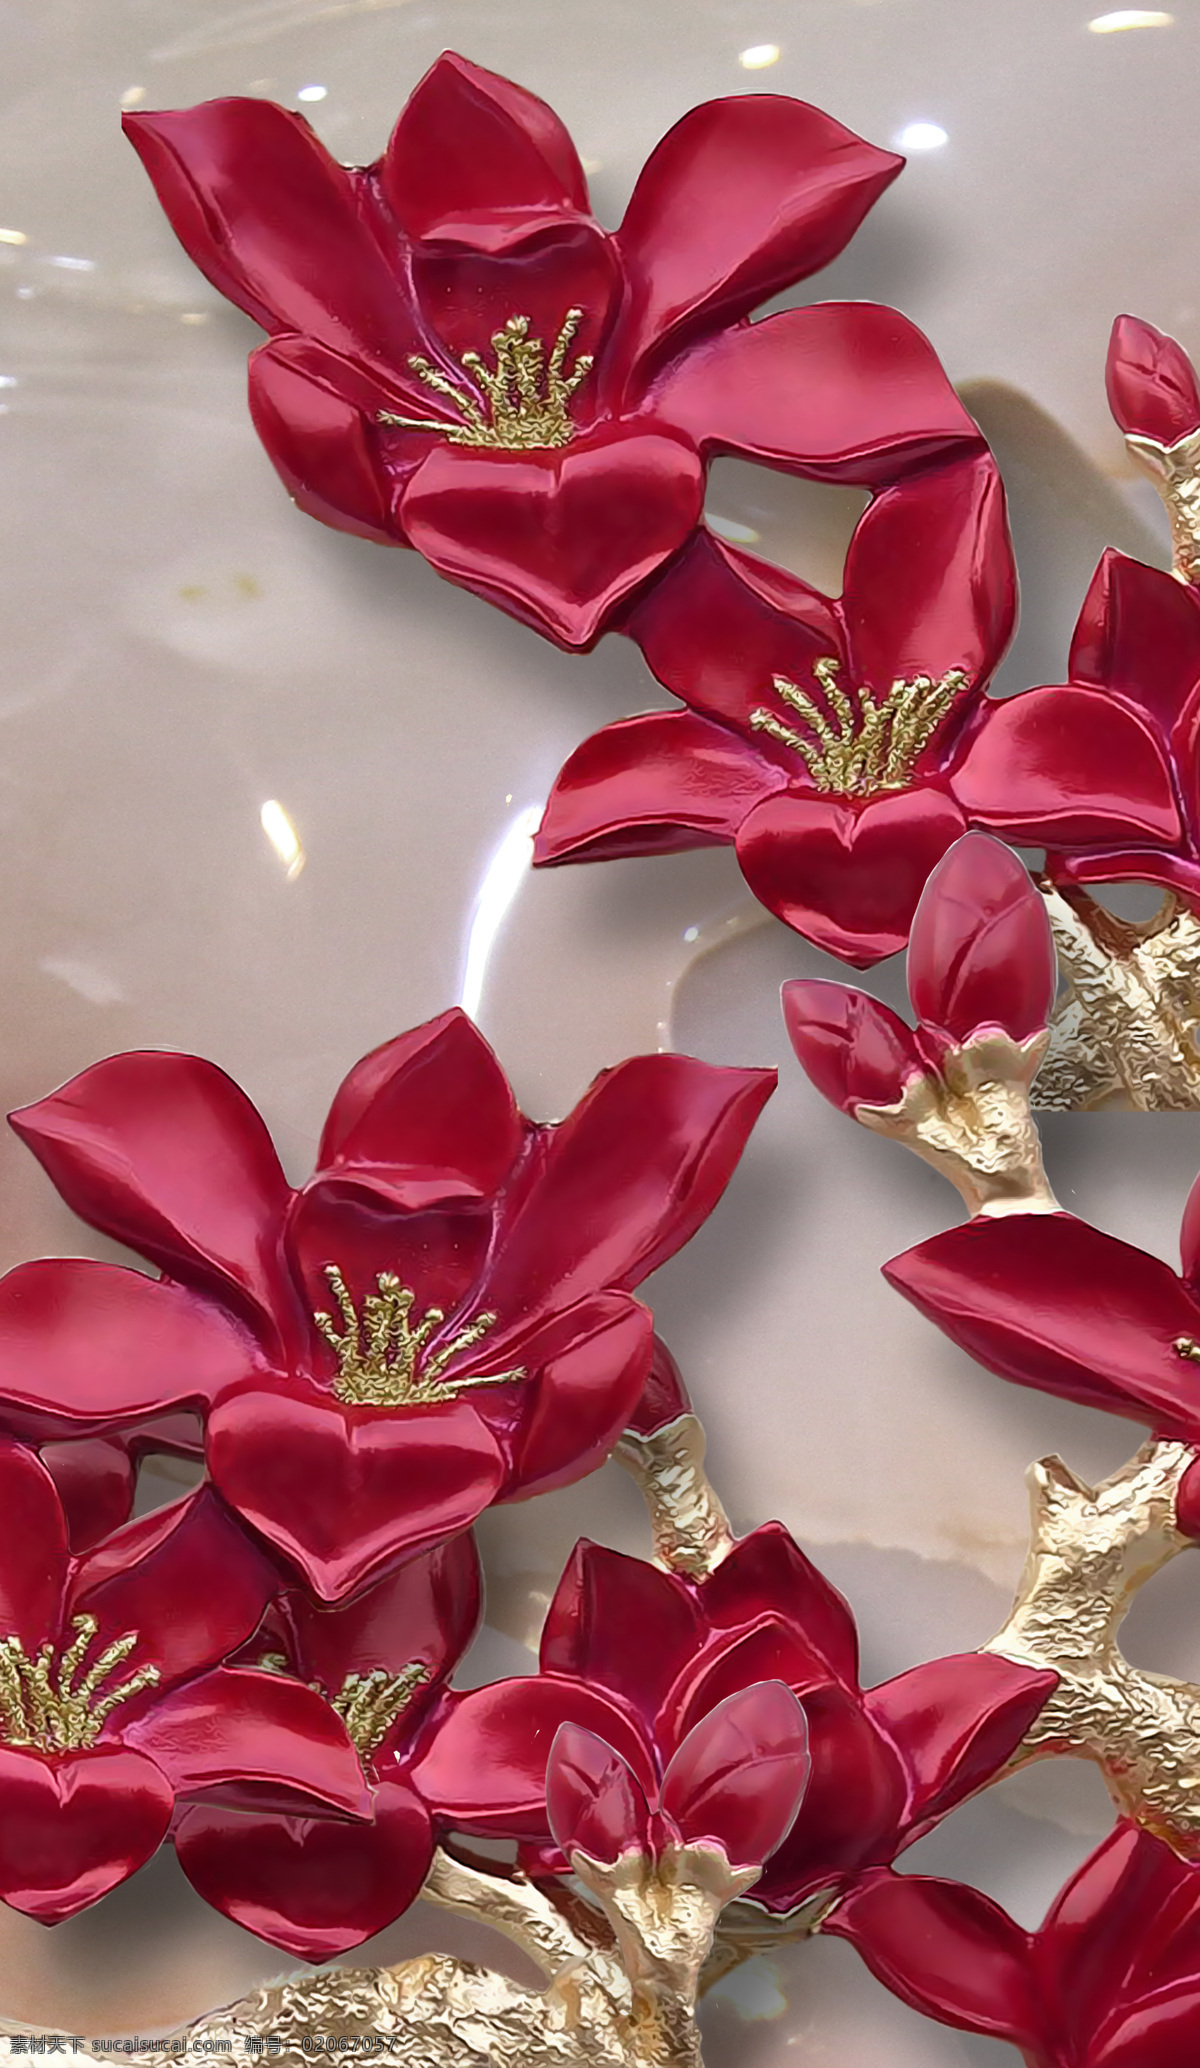 红色妖姬花 妖姬 玻璃 背景 3d 花纹 红色 花 文化艺术 传统文化